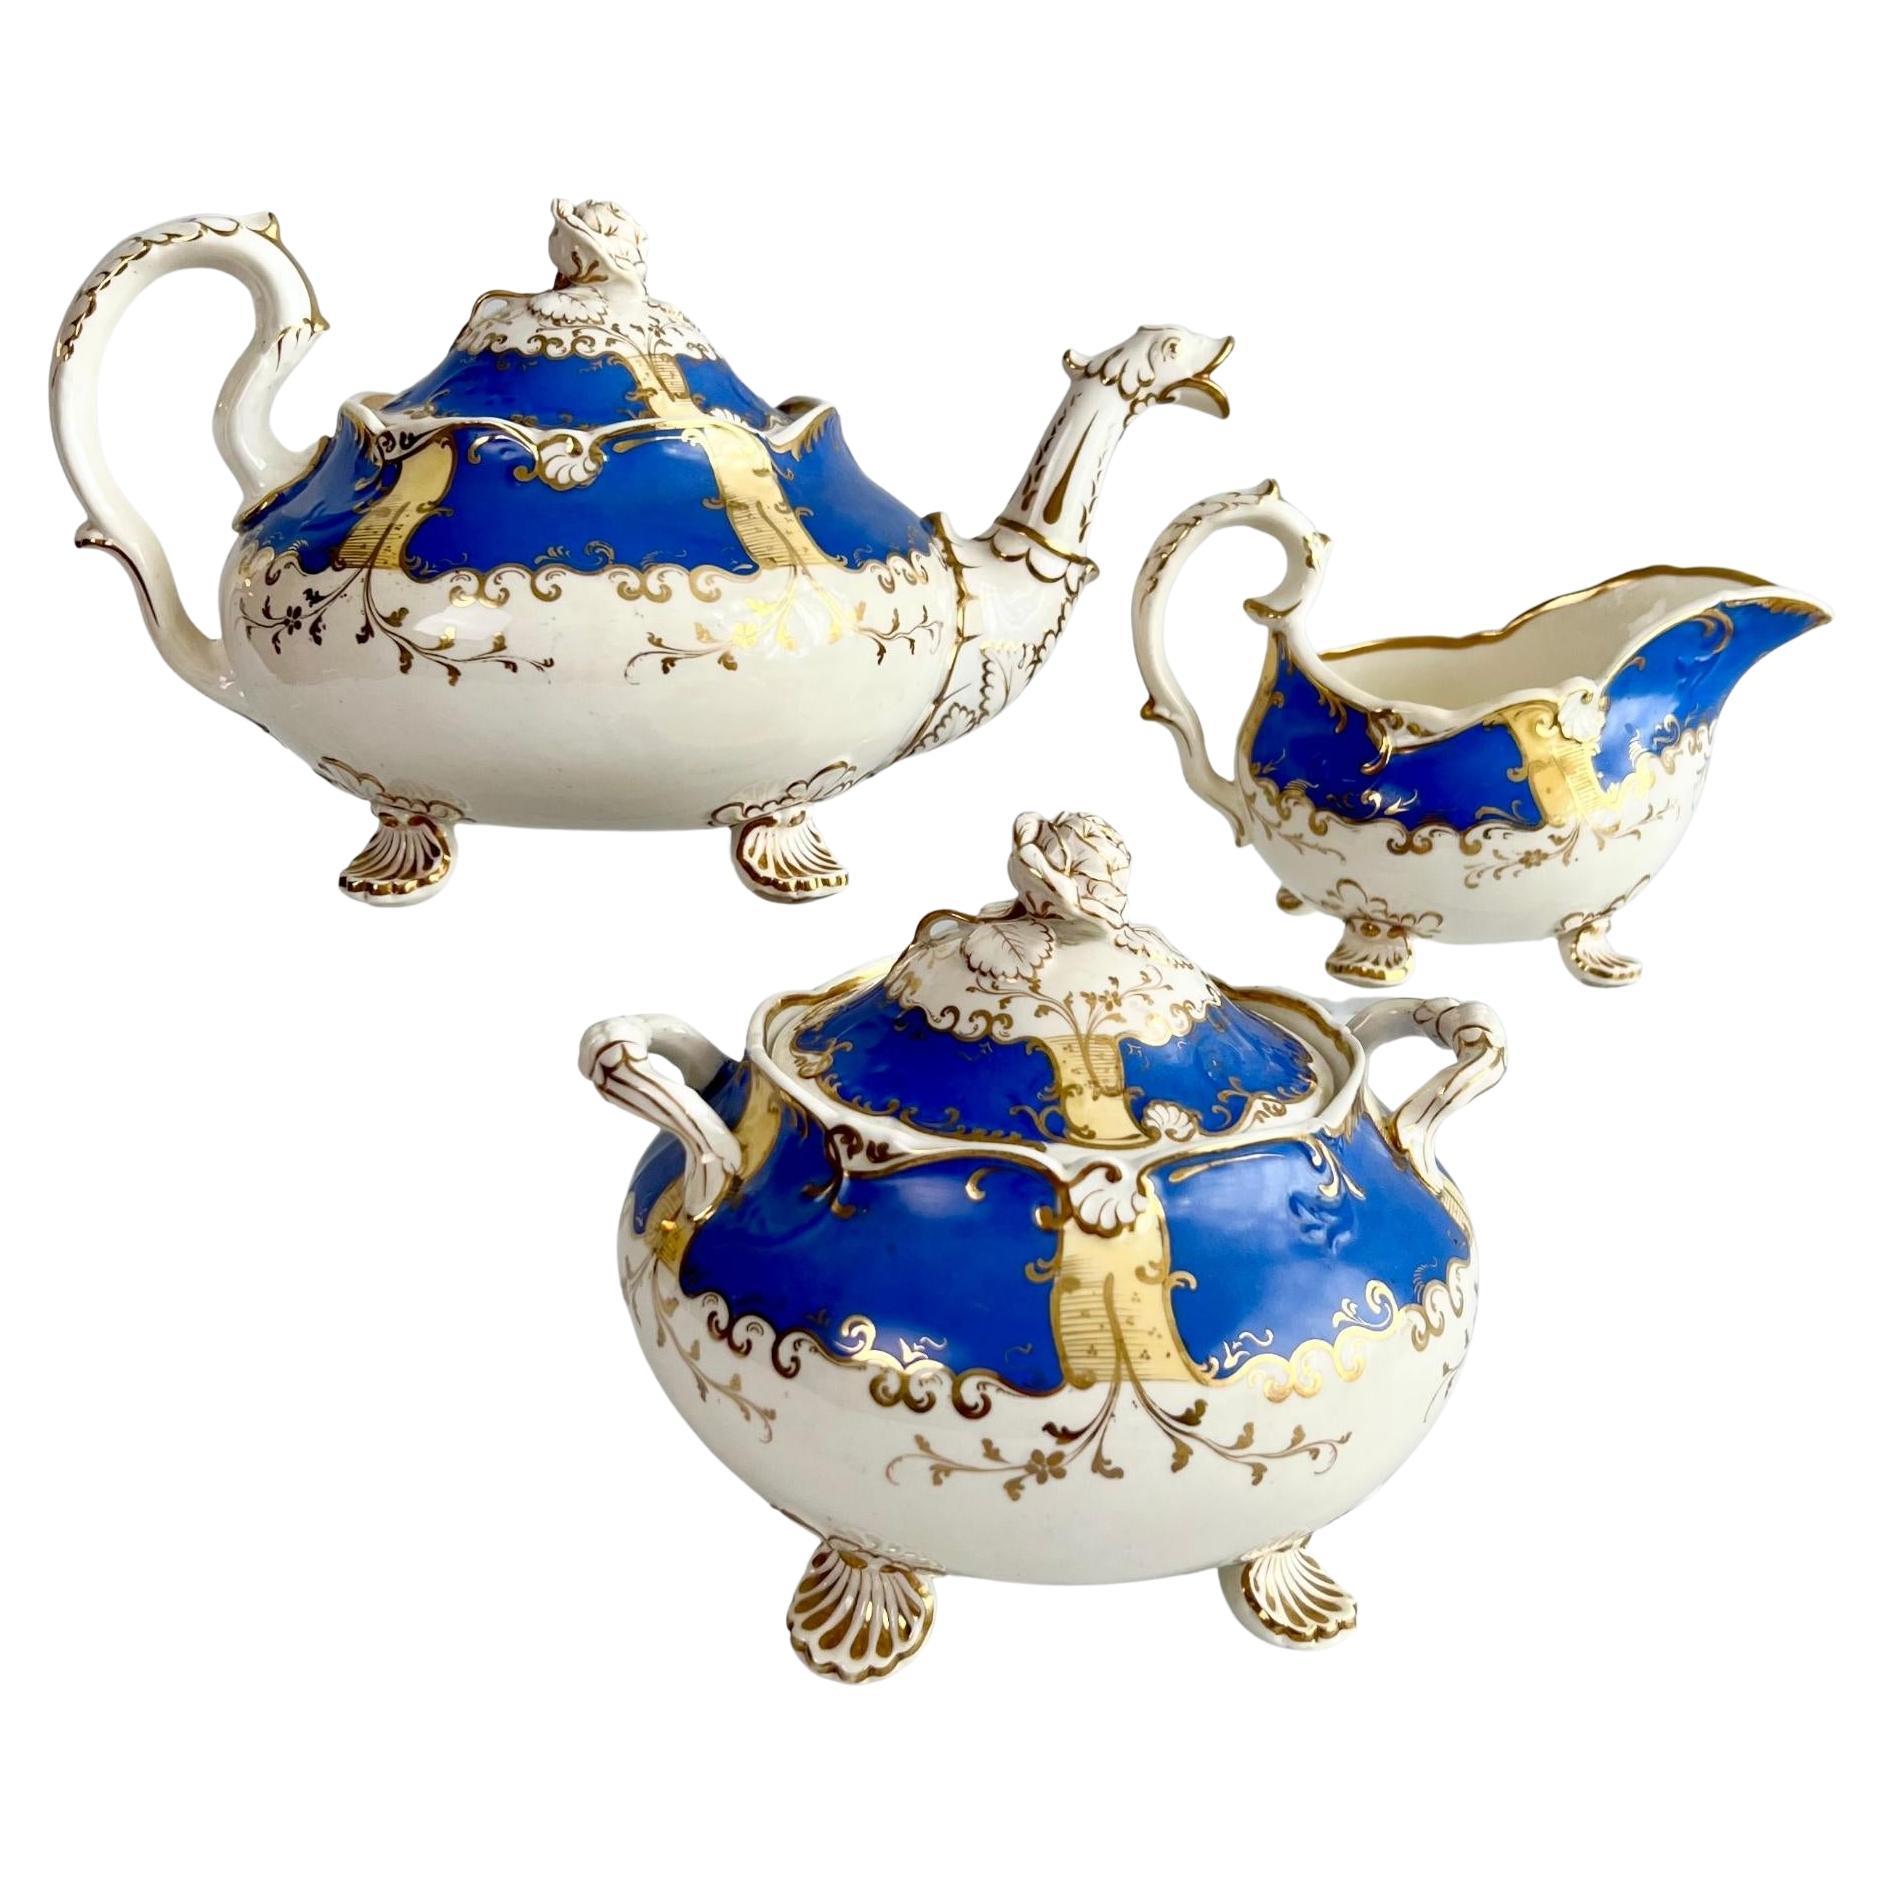 H & R Daniel Porcelain Teapot Set, Royal Blue and Gilt, Rococo Revival, 1831